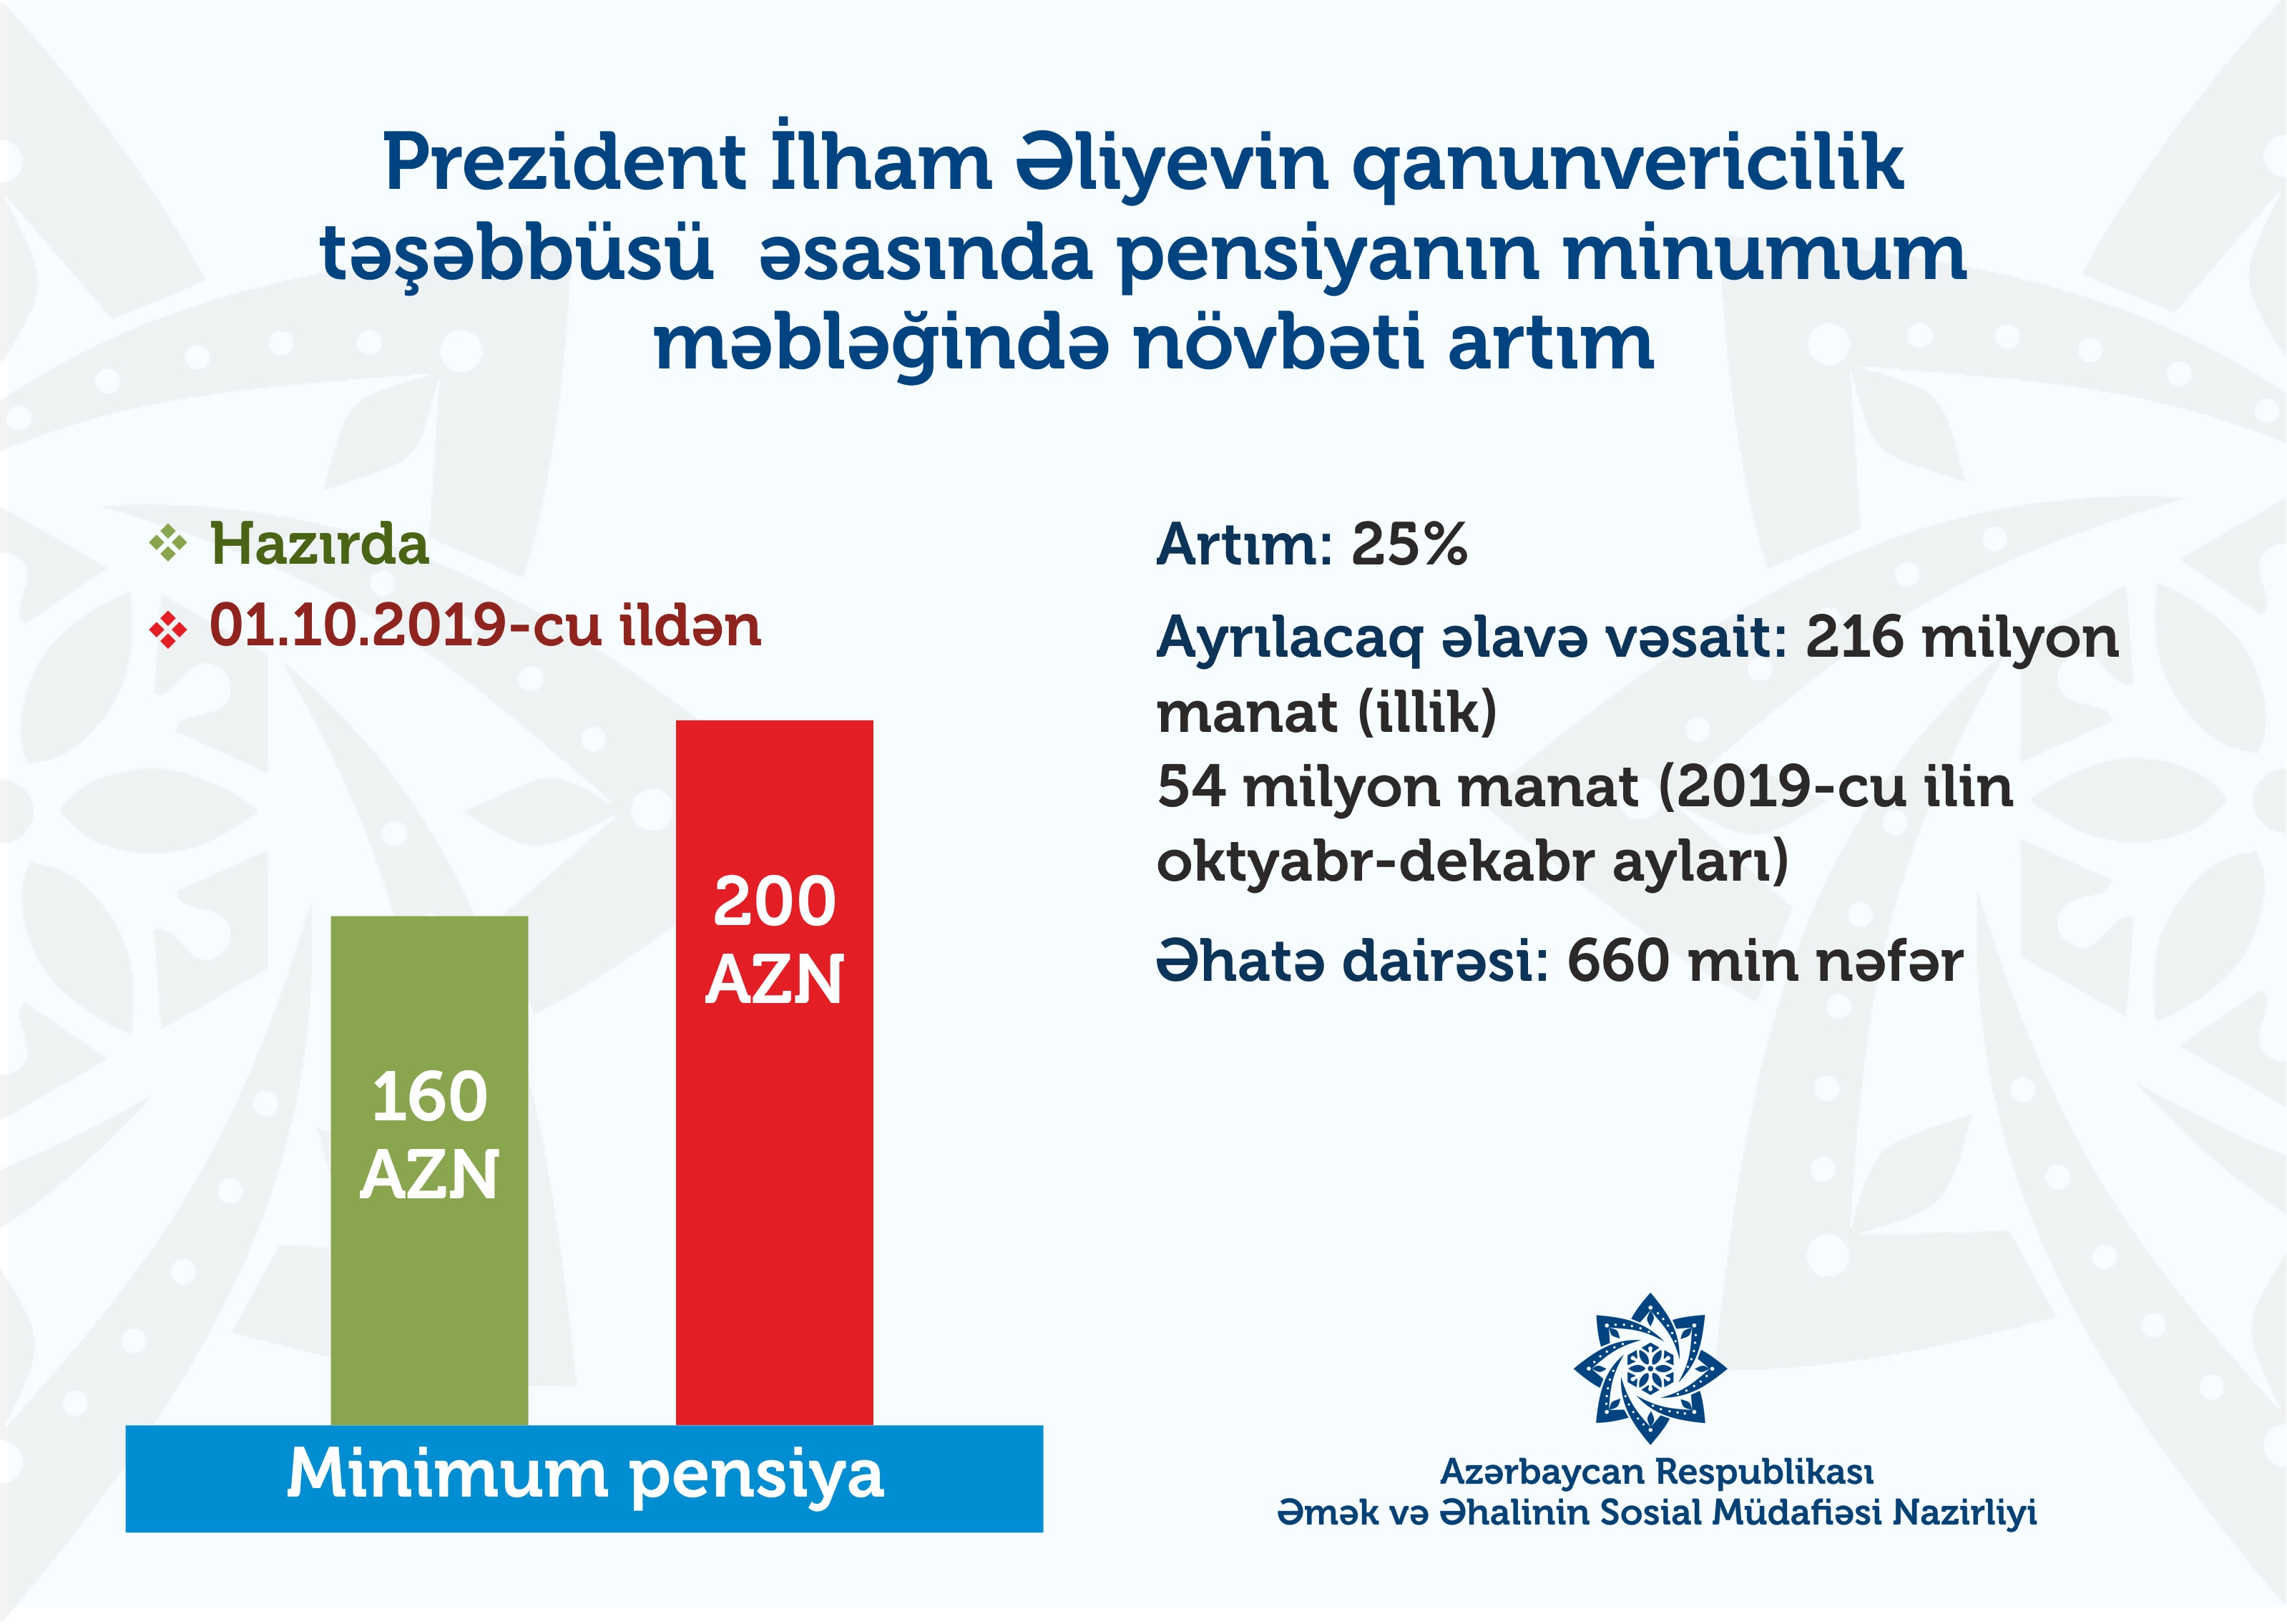 Prezidentdən yeni qanunvericilik təşəbbüsü: Pensiyanın minimum məbləği 200 manata çatdırılır